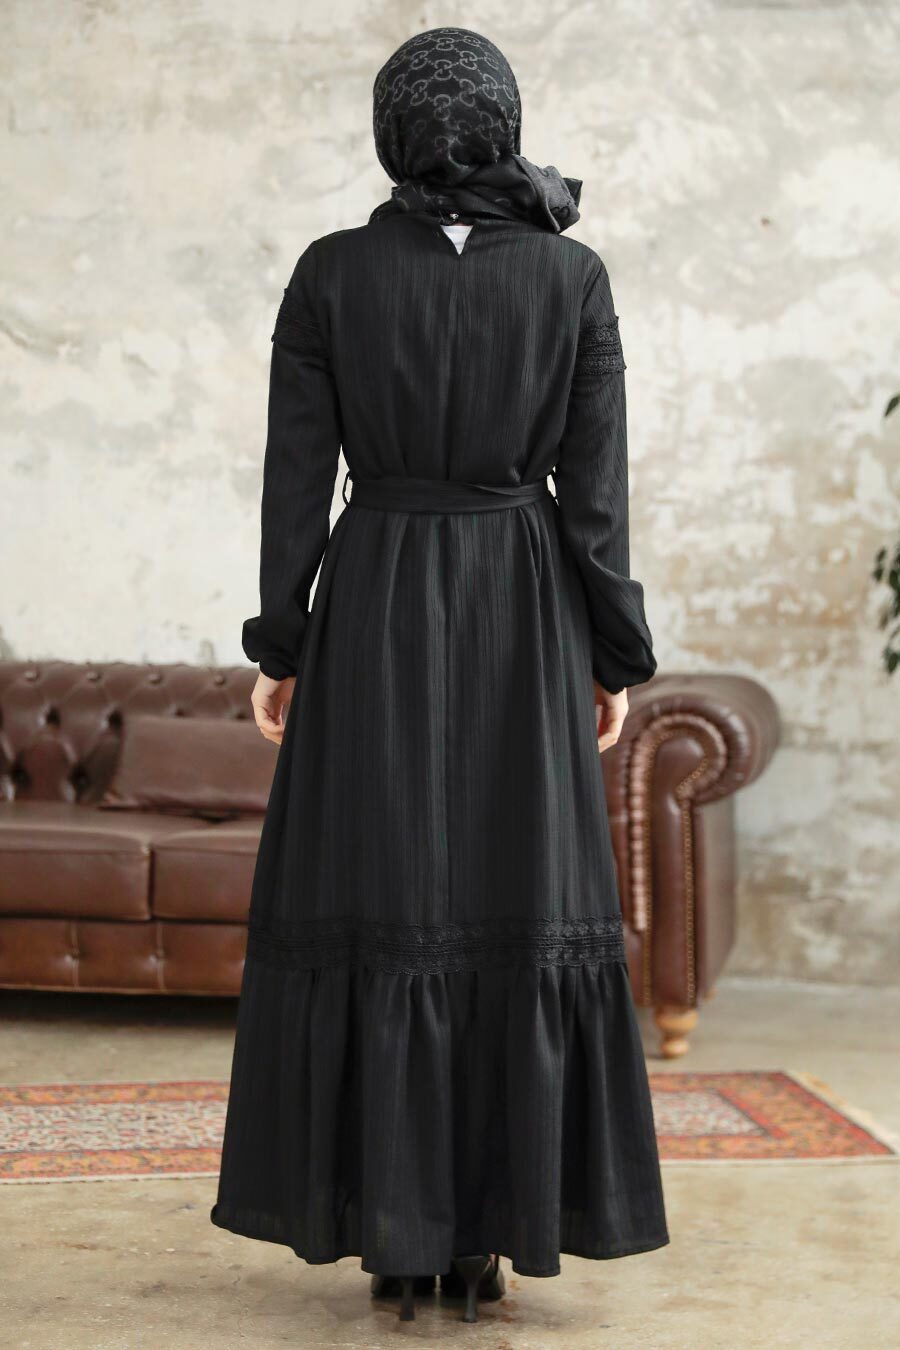 Neva Style - Black Islamic Clothing Dress 5877S